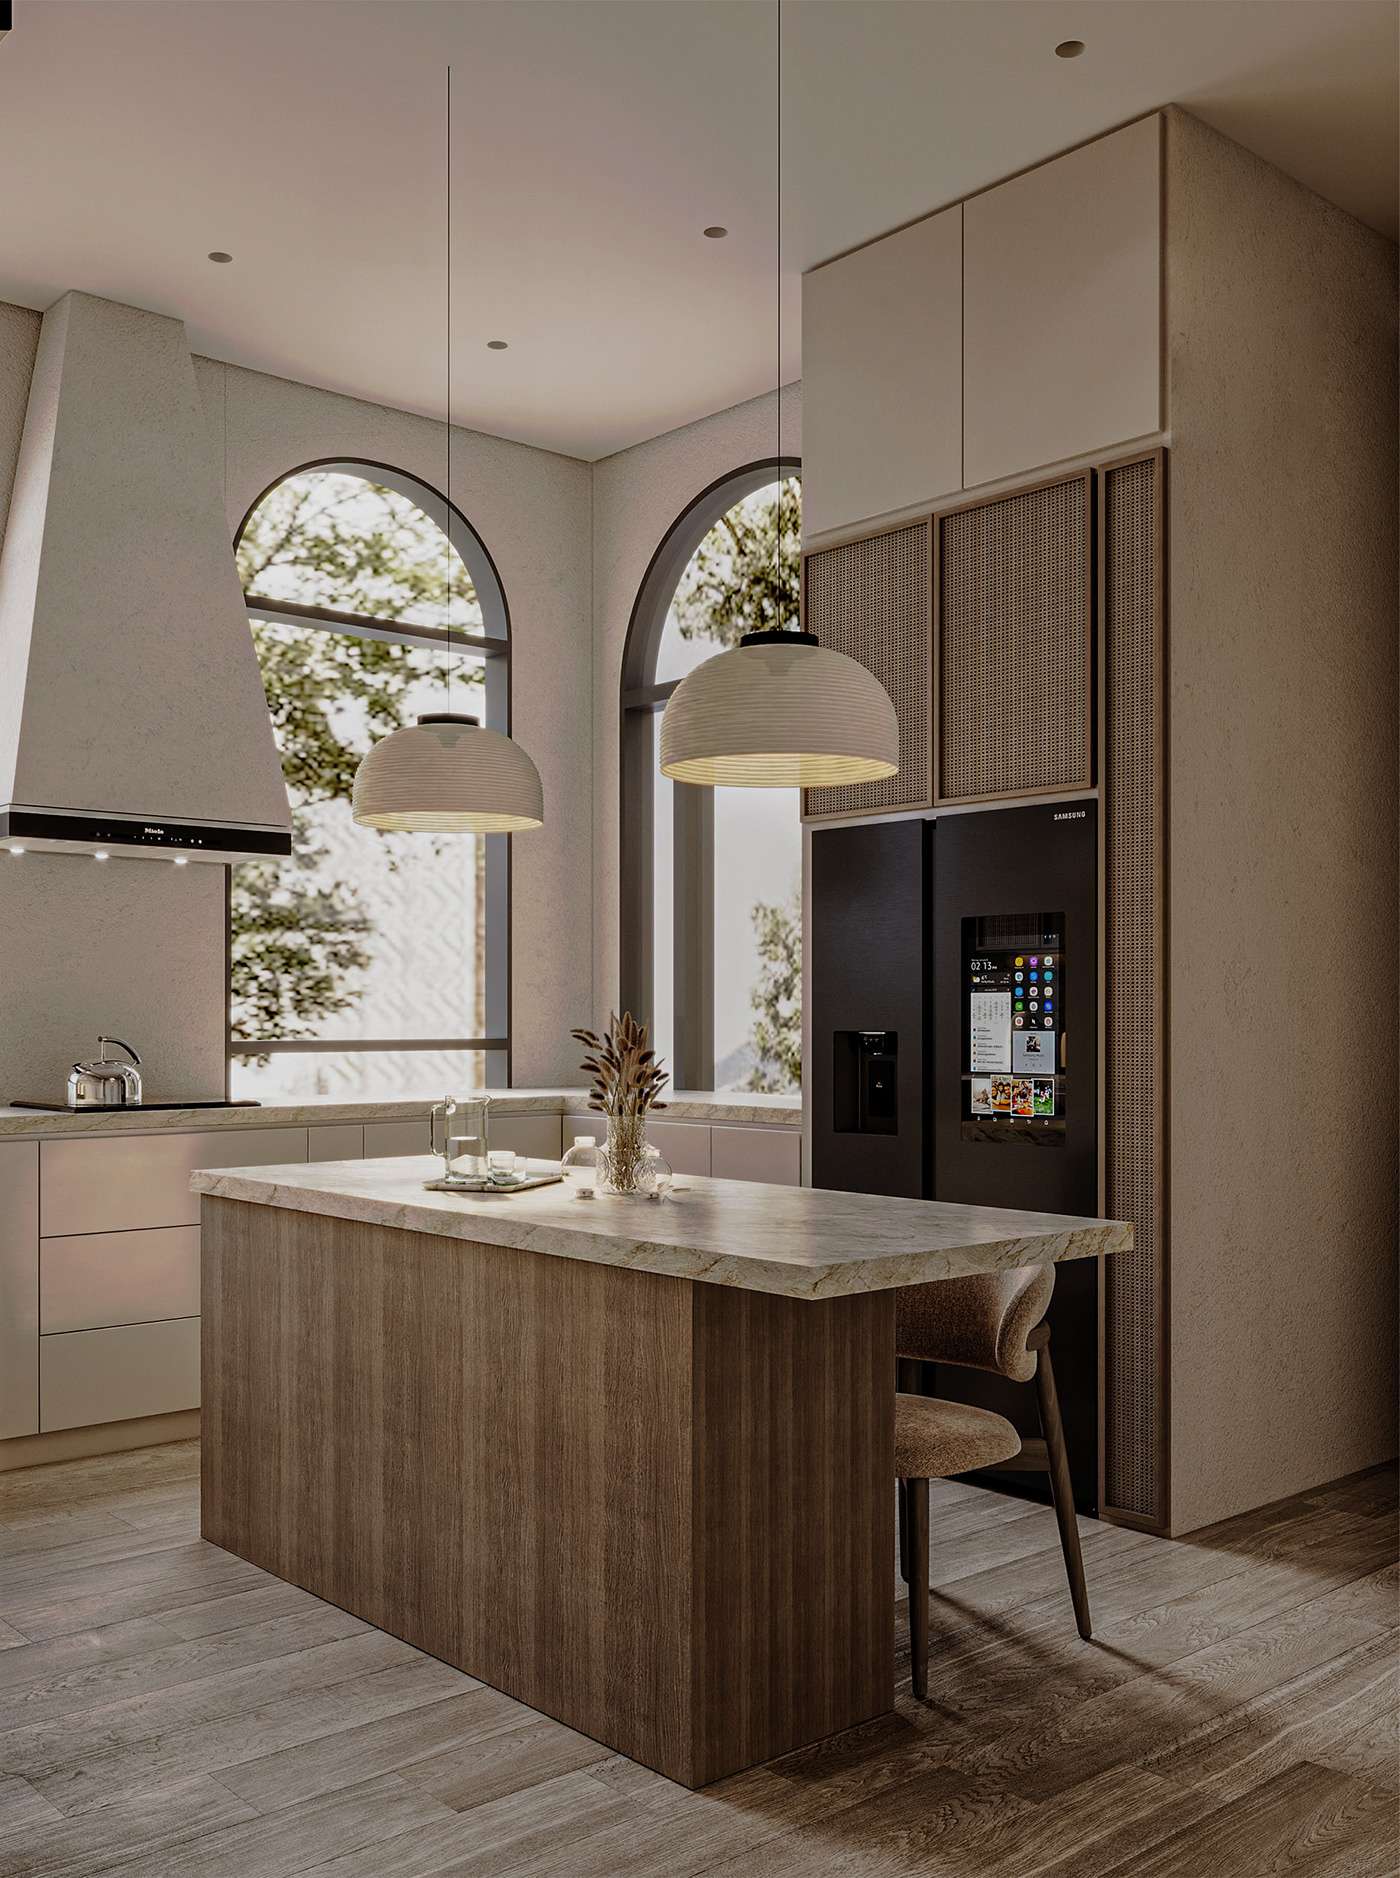 Thiết kế nội thất phòng bếp đơn giản với chất liệu gỗ phong cách Scandinavian